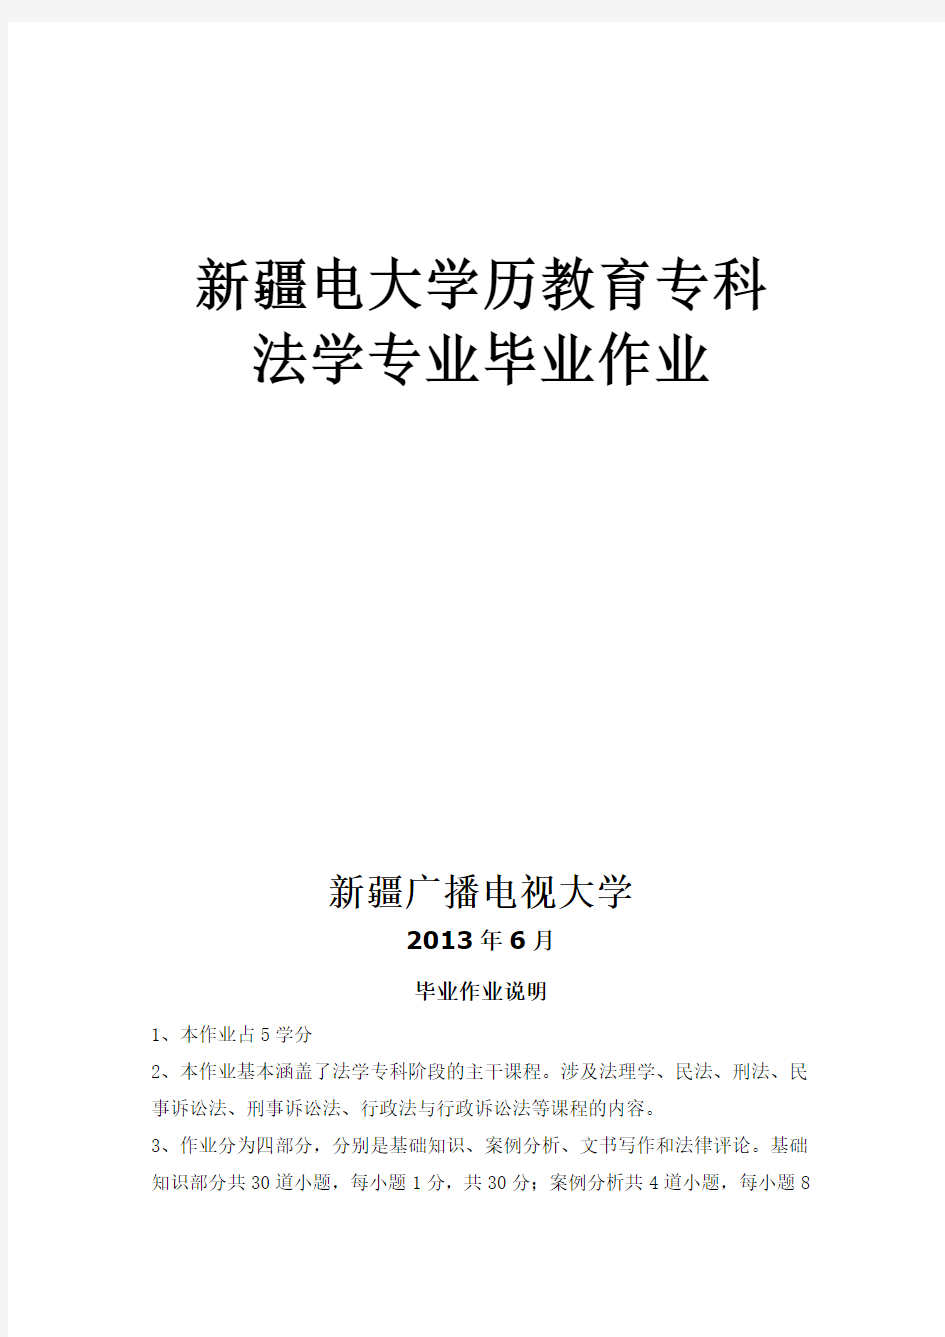 法学专科毕业大作业样本(2013)